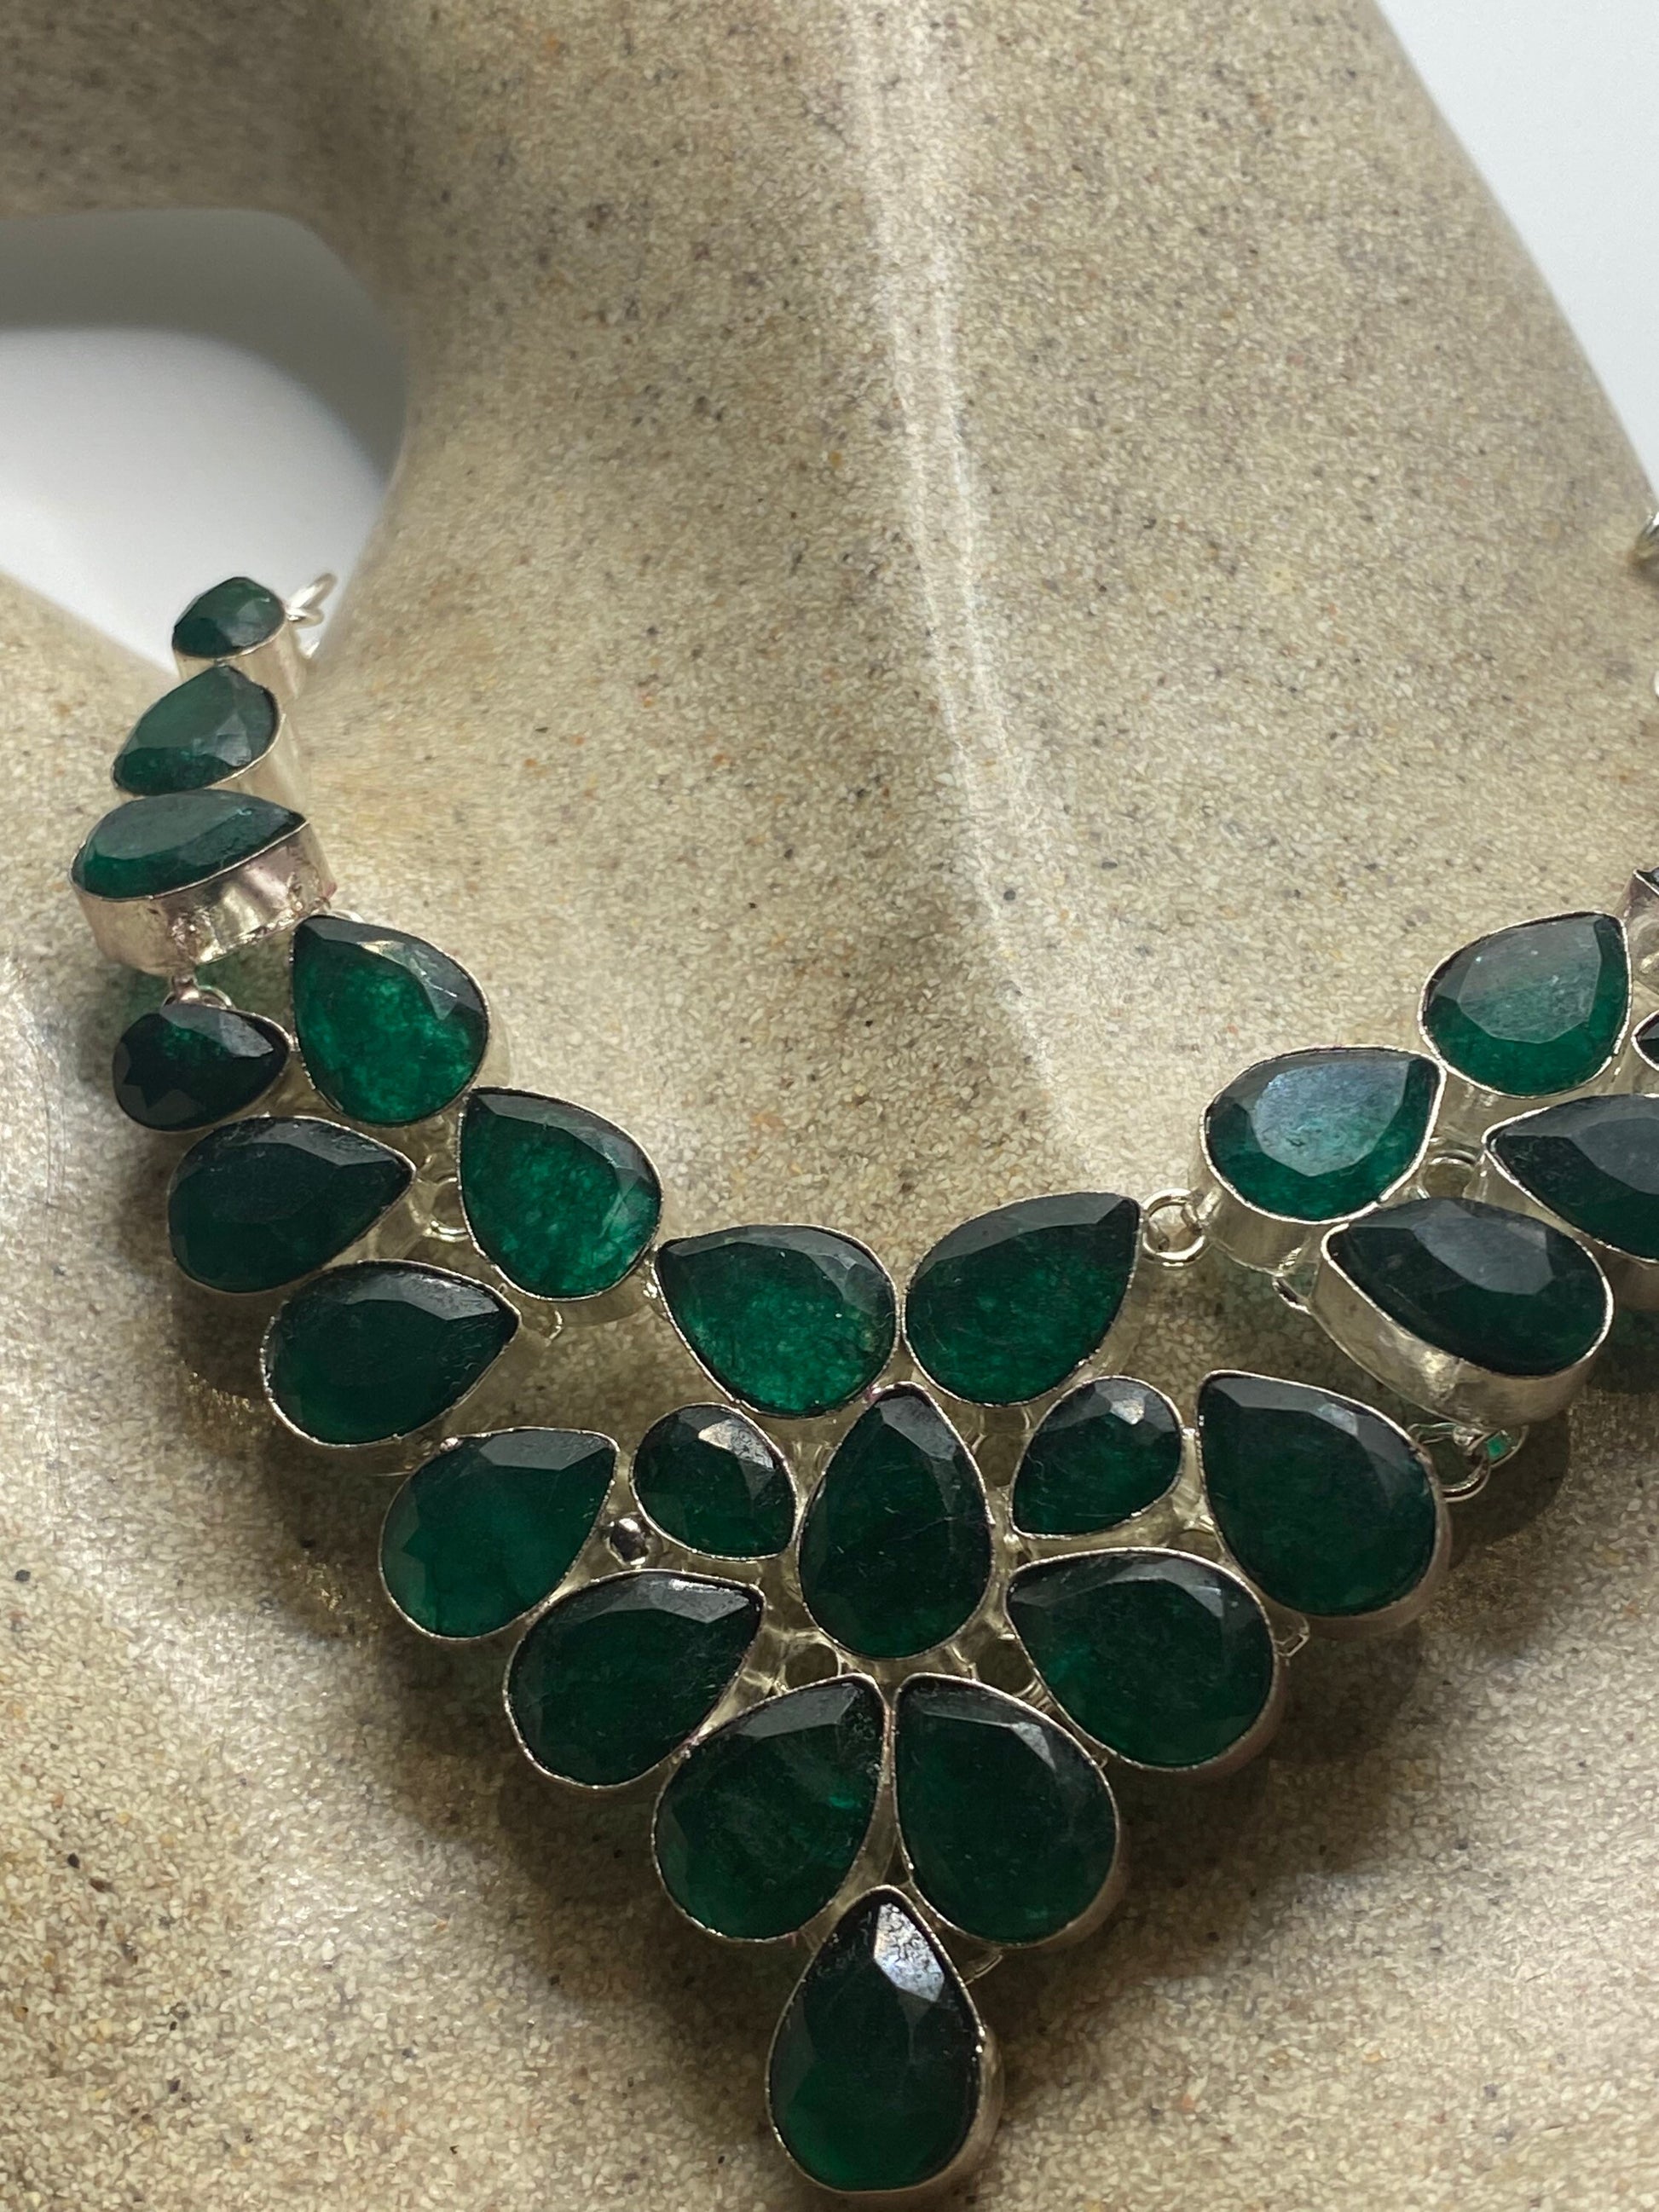 Vintage Silver Genuine Green Quartz Gemstone Statement Bib Necklace.